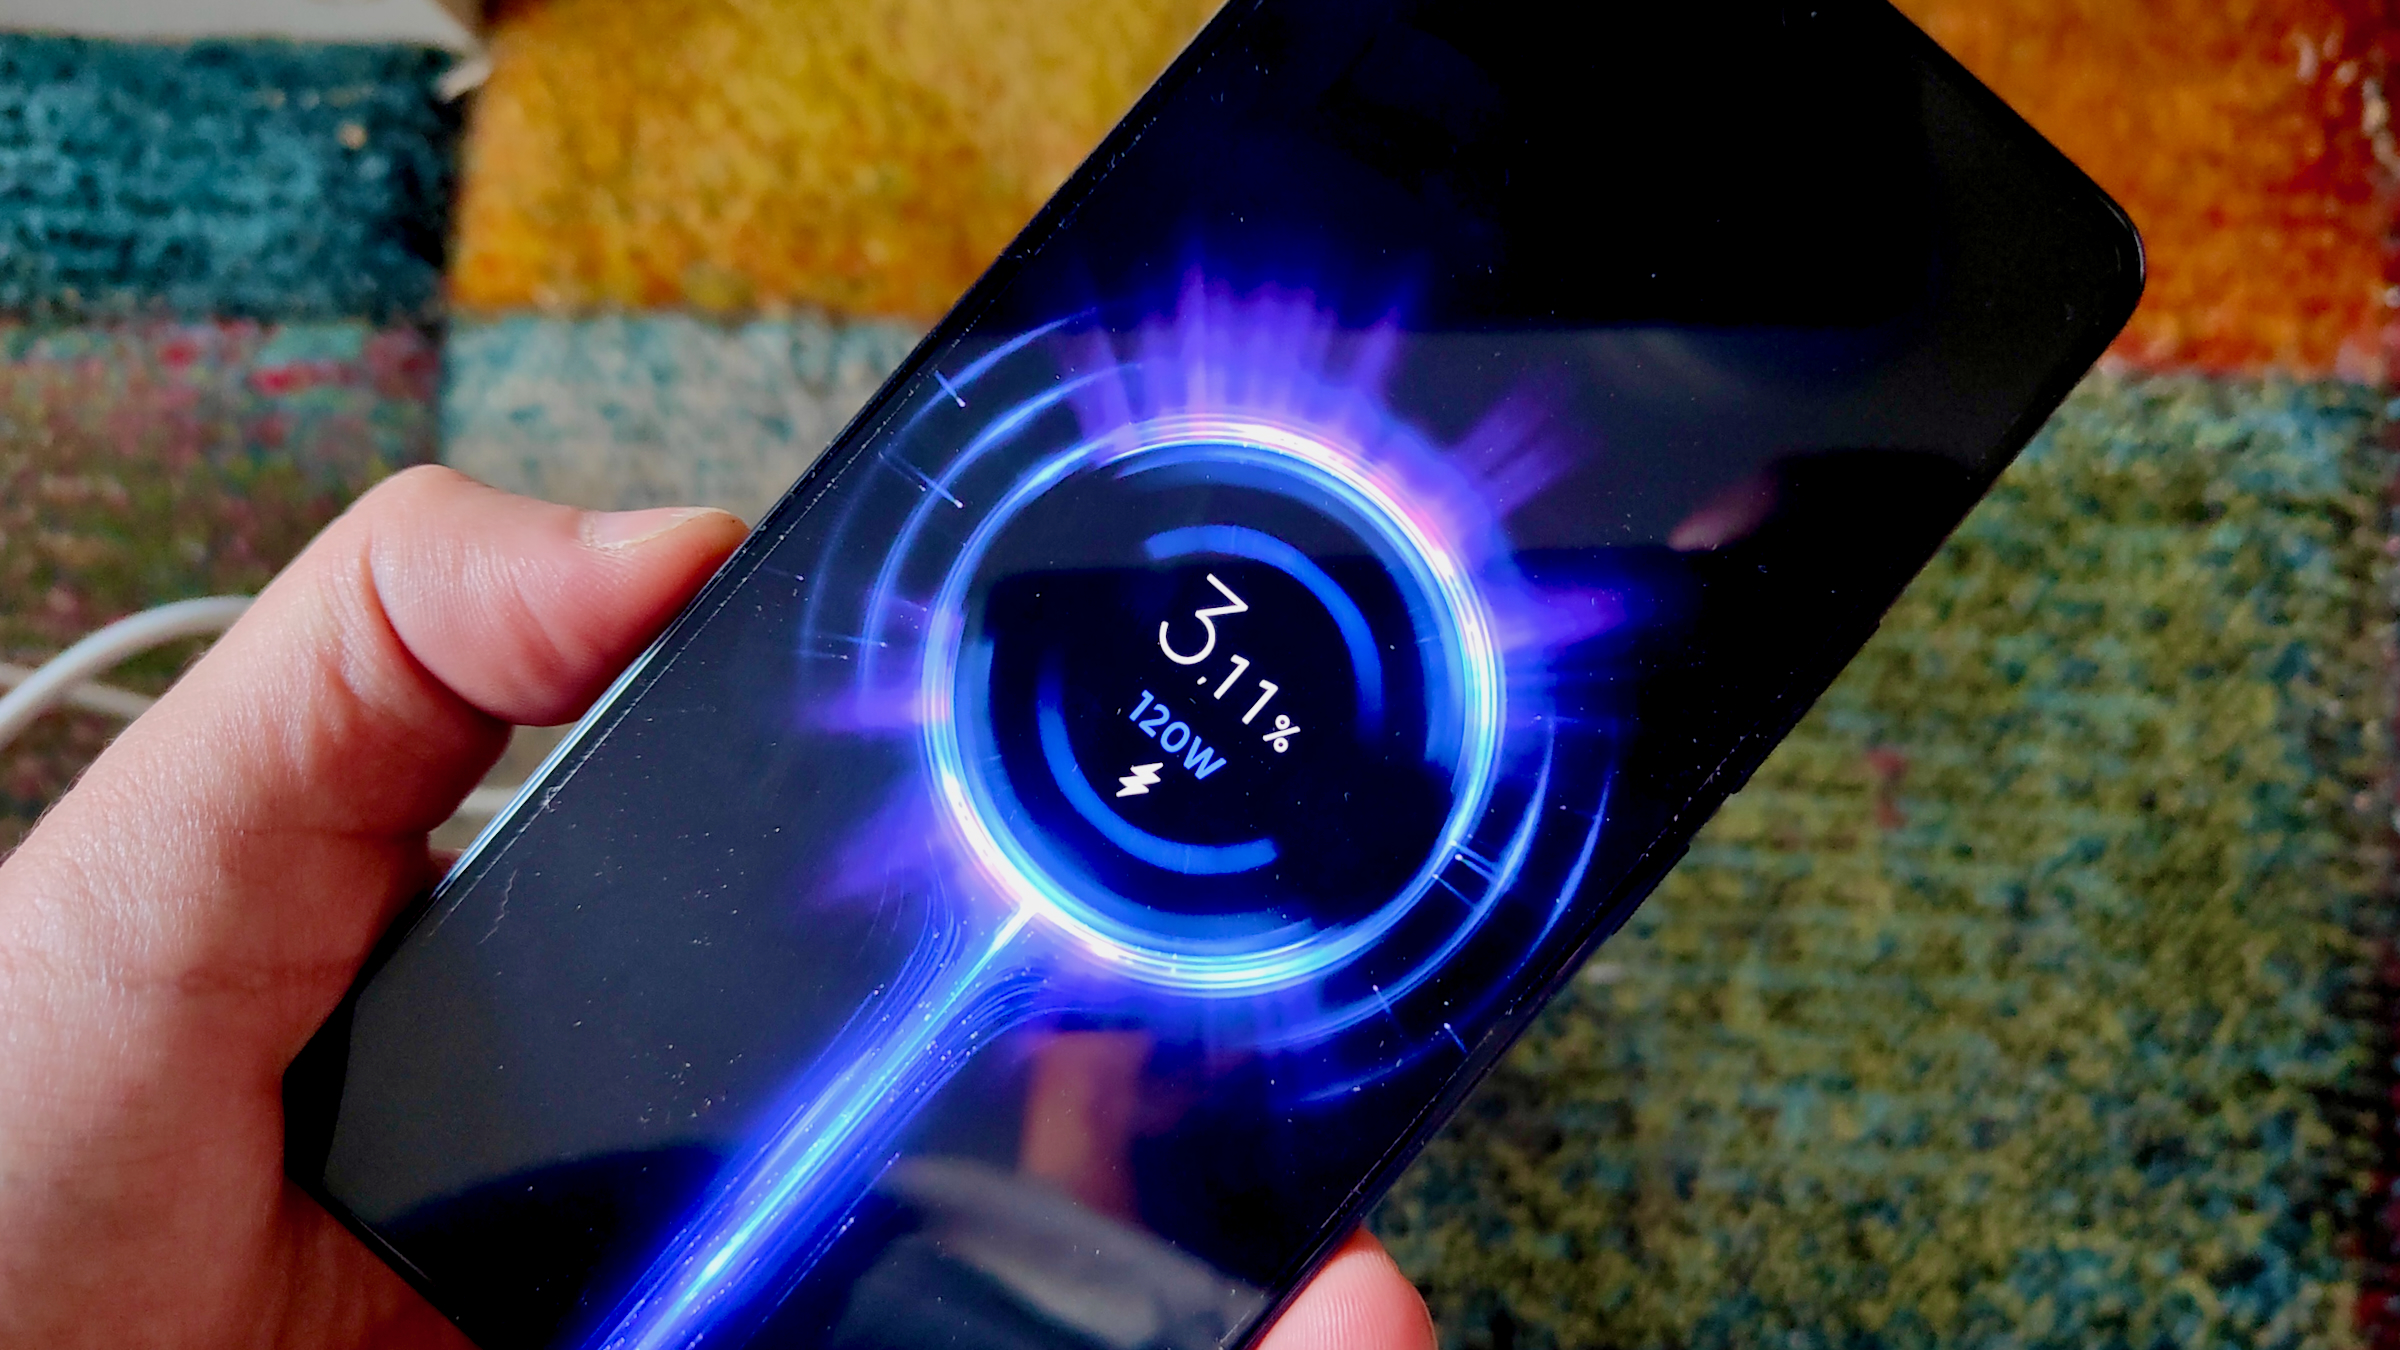 Nueva carga inalámbrica de Xiaomi: 100% de la batería en 40 minutos